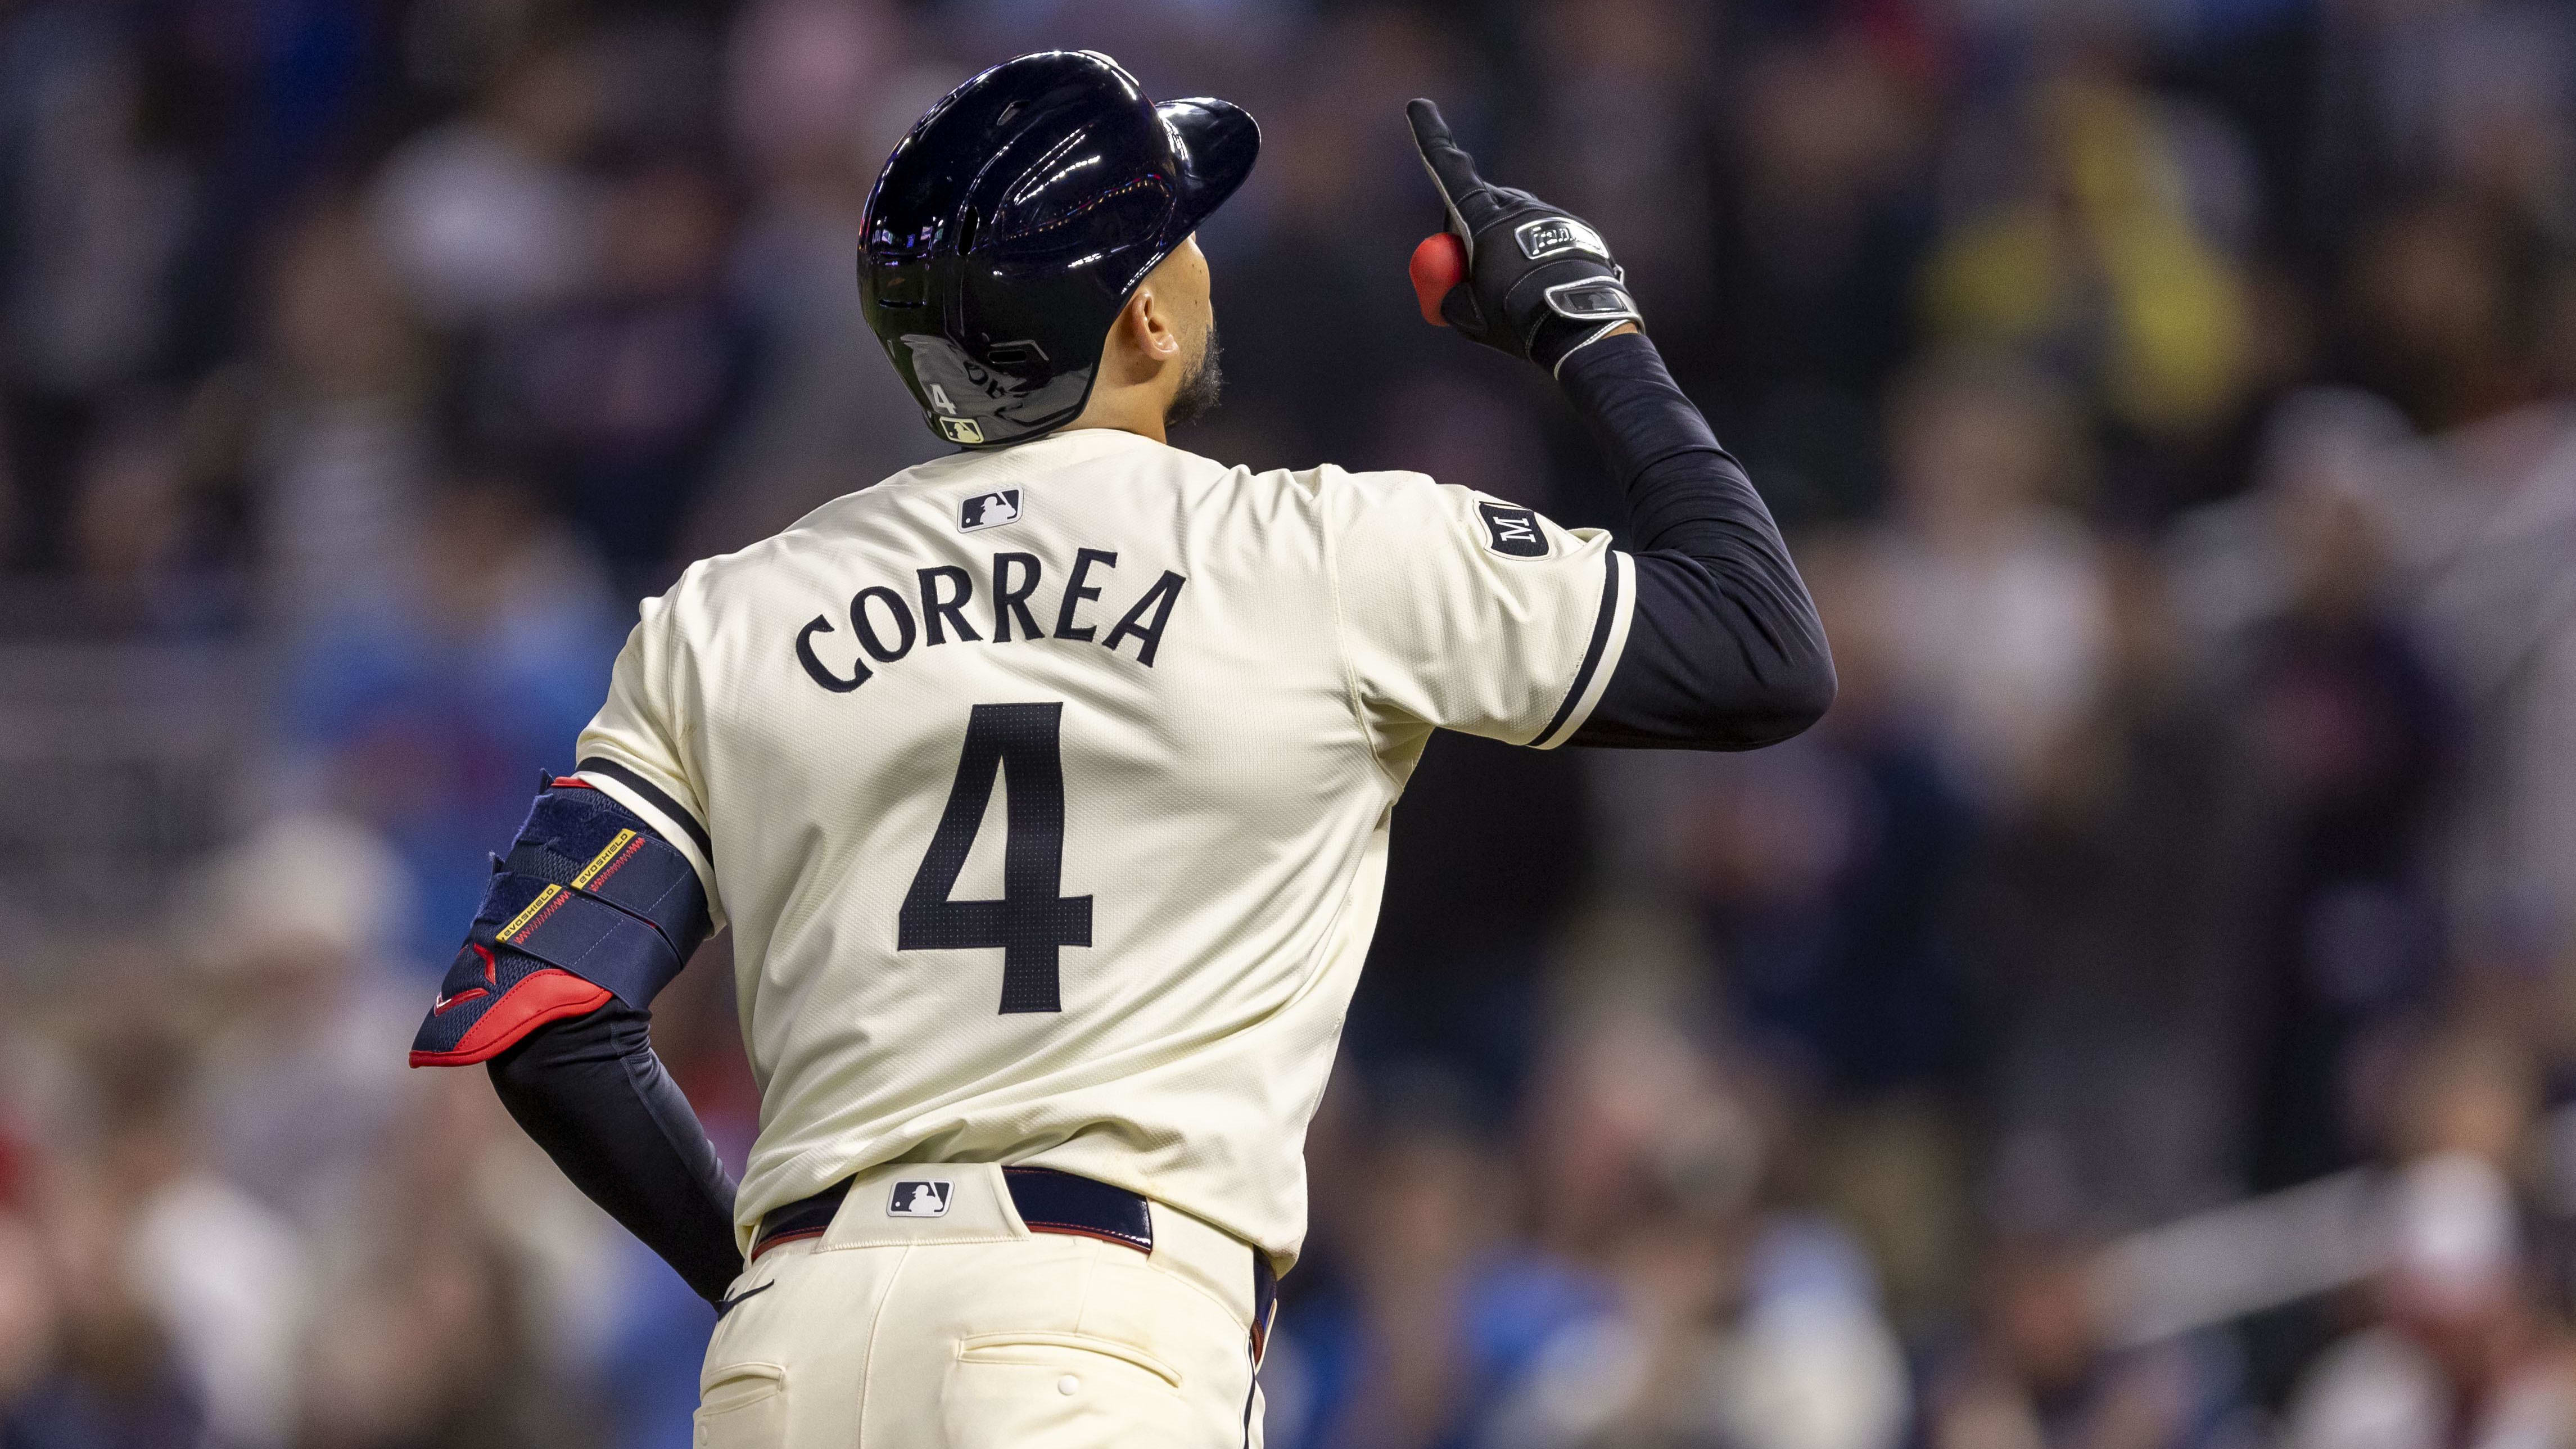 Carlos Correa des Astros de Houston confronté à une nouvelle blessure oblique: une saison difficile pour l’ancienne légende de la franchise